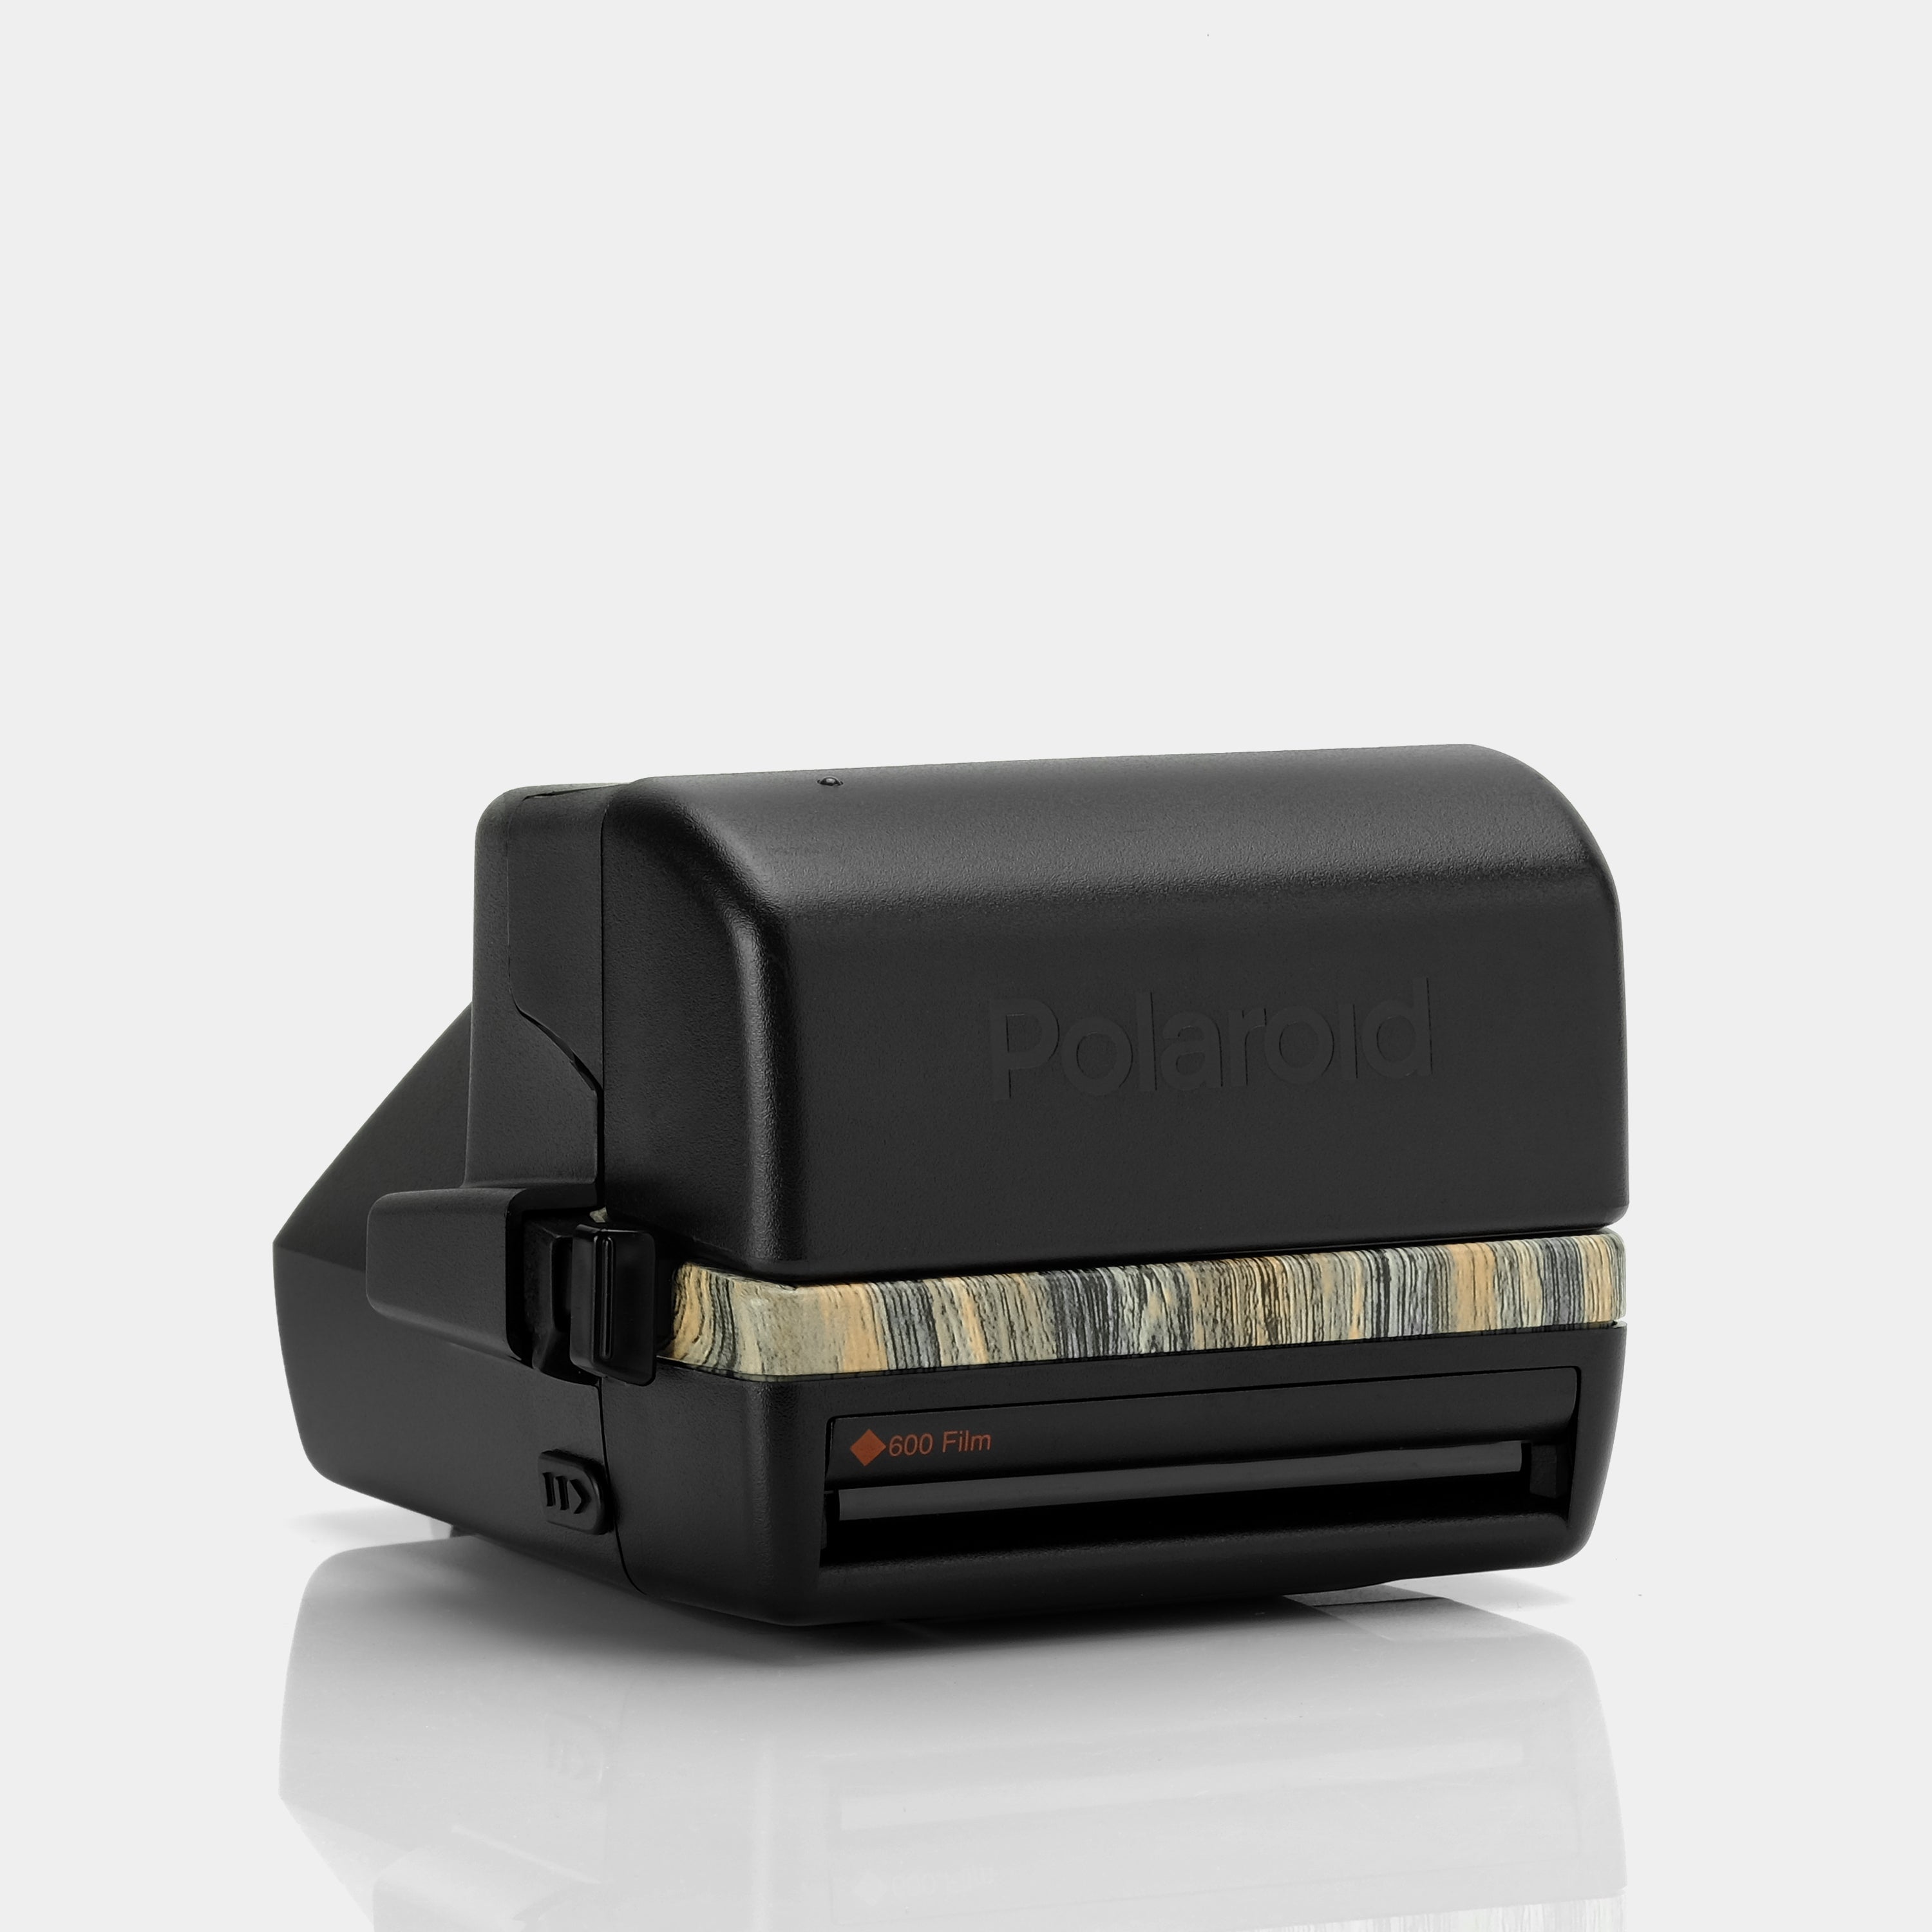 Polaroid 600 OneStep Autofocus Wood Grain Instant Film Camera